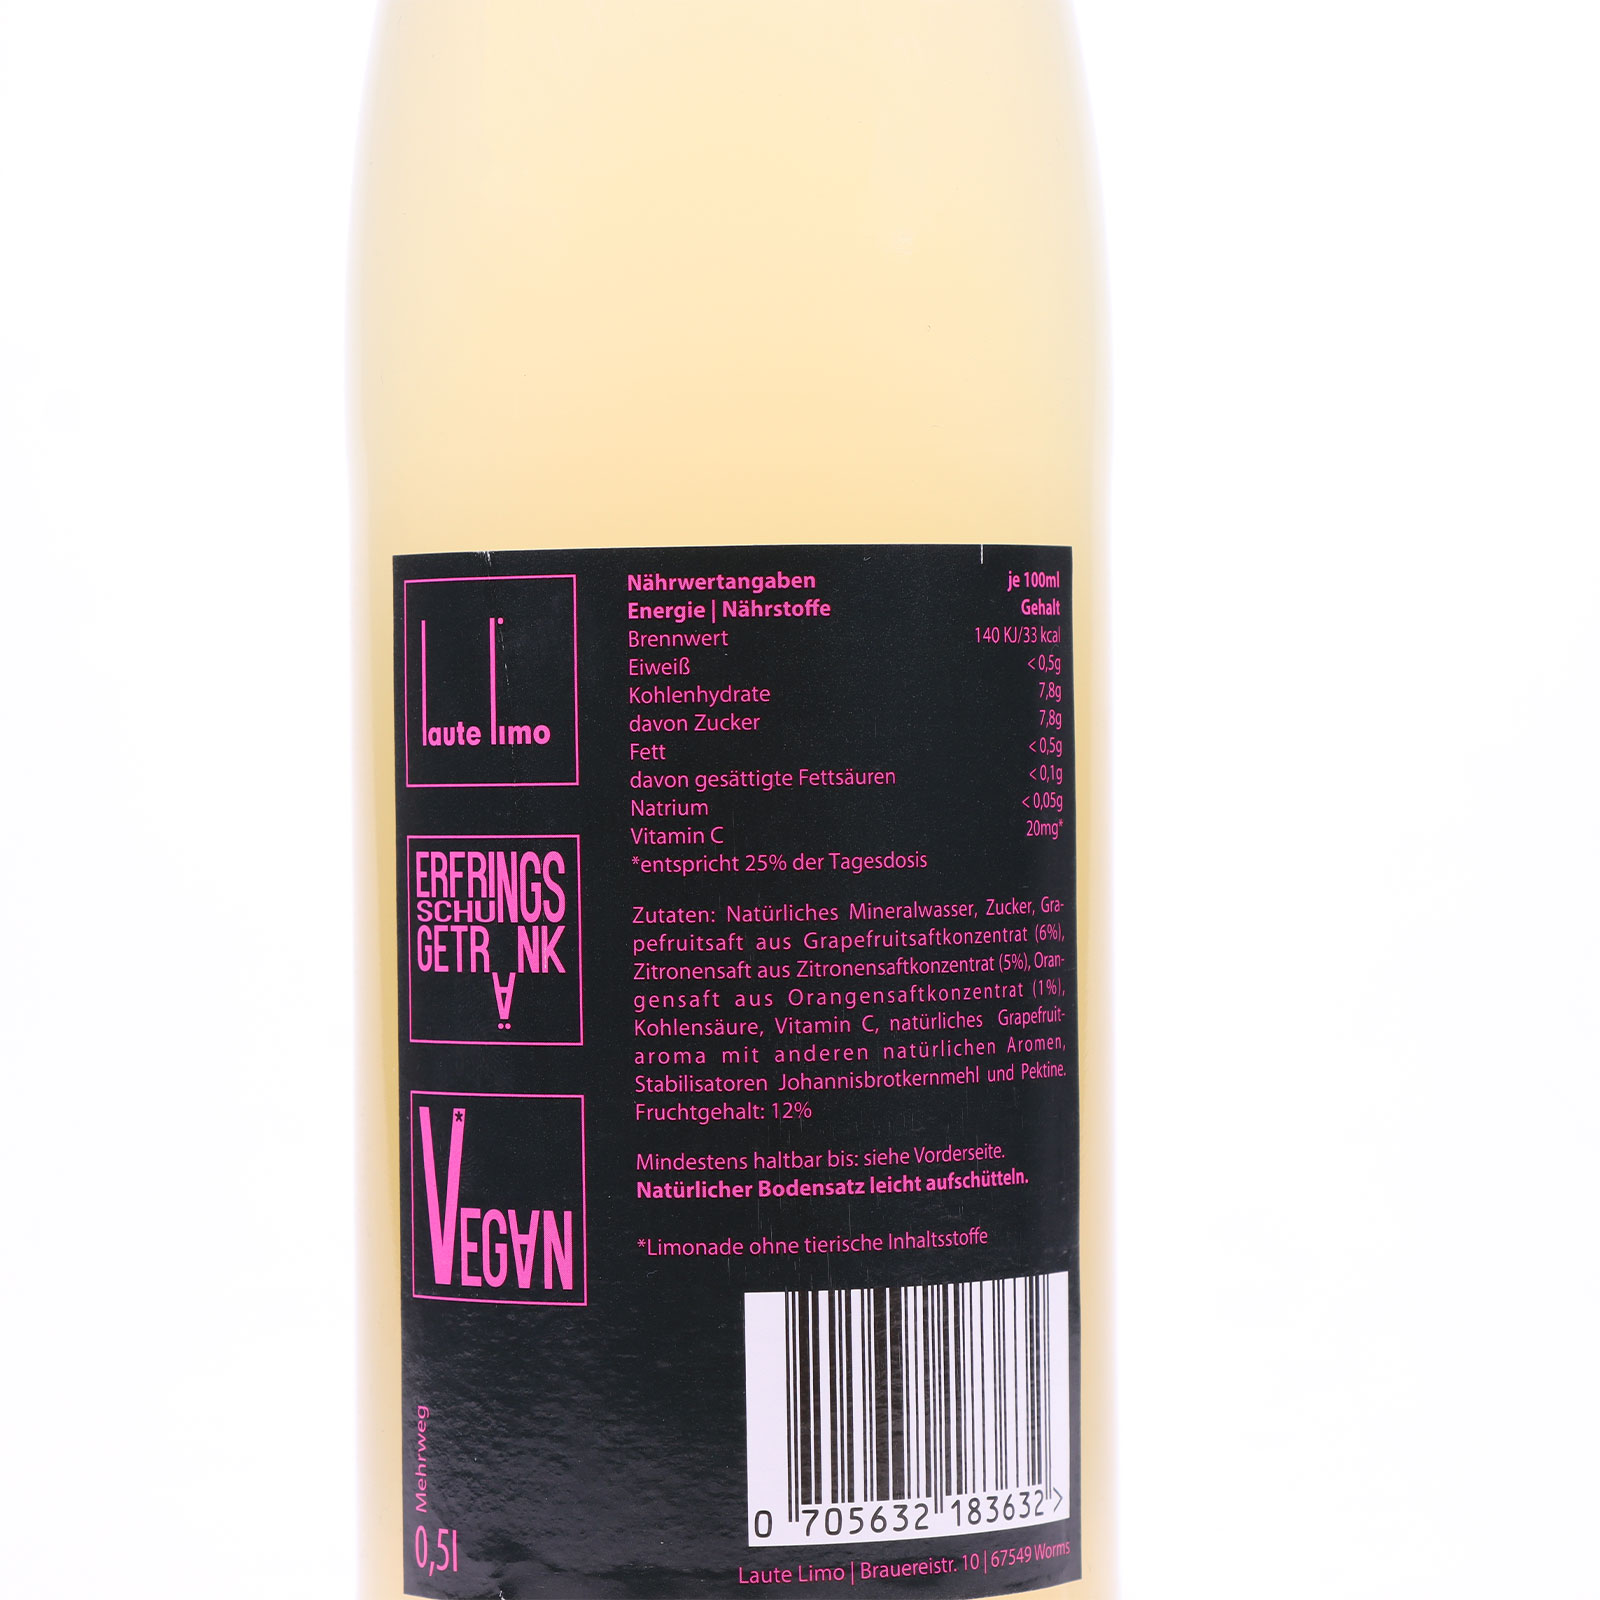 Rückansicht des Labels der Laute Limo Grapefrucht mit Herstellerangaben.